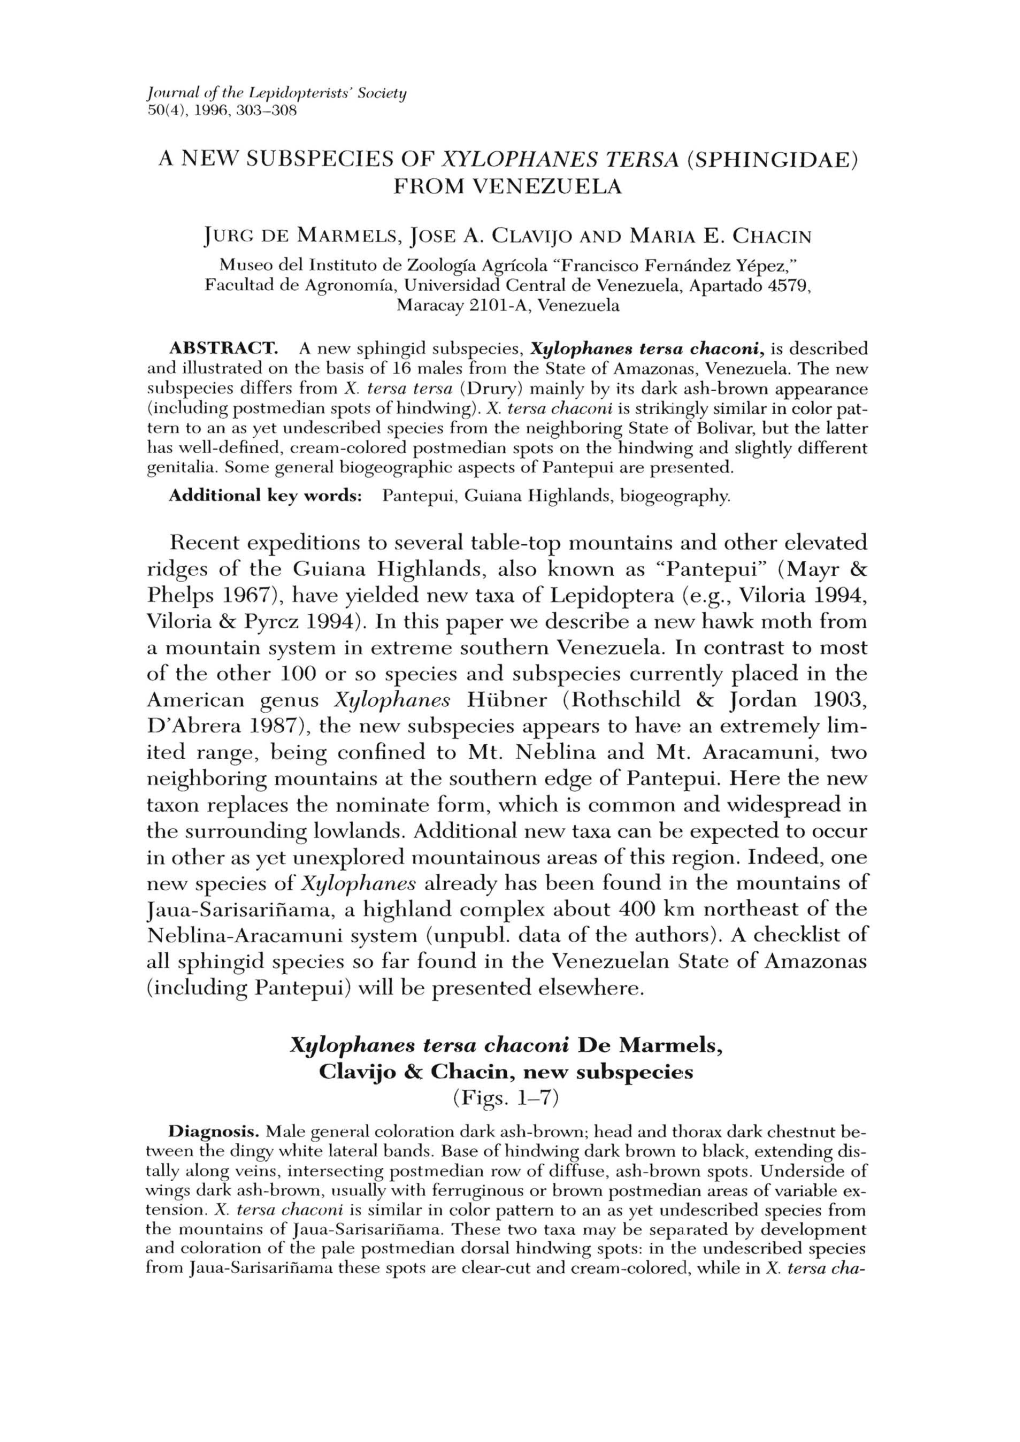 Xylophanes Tersa Chaconi De Marmels, Clavijo & Chacin, New Subspecie,S (Figs